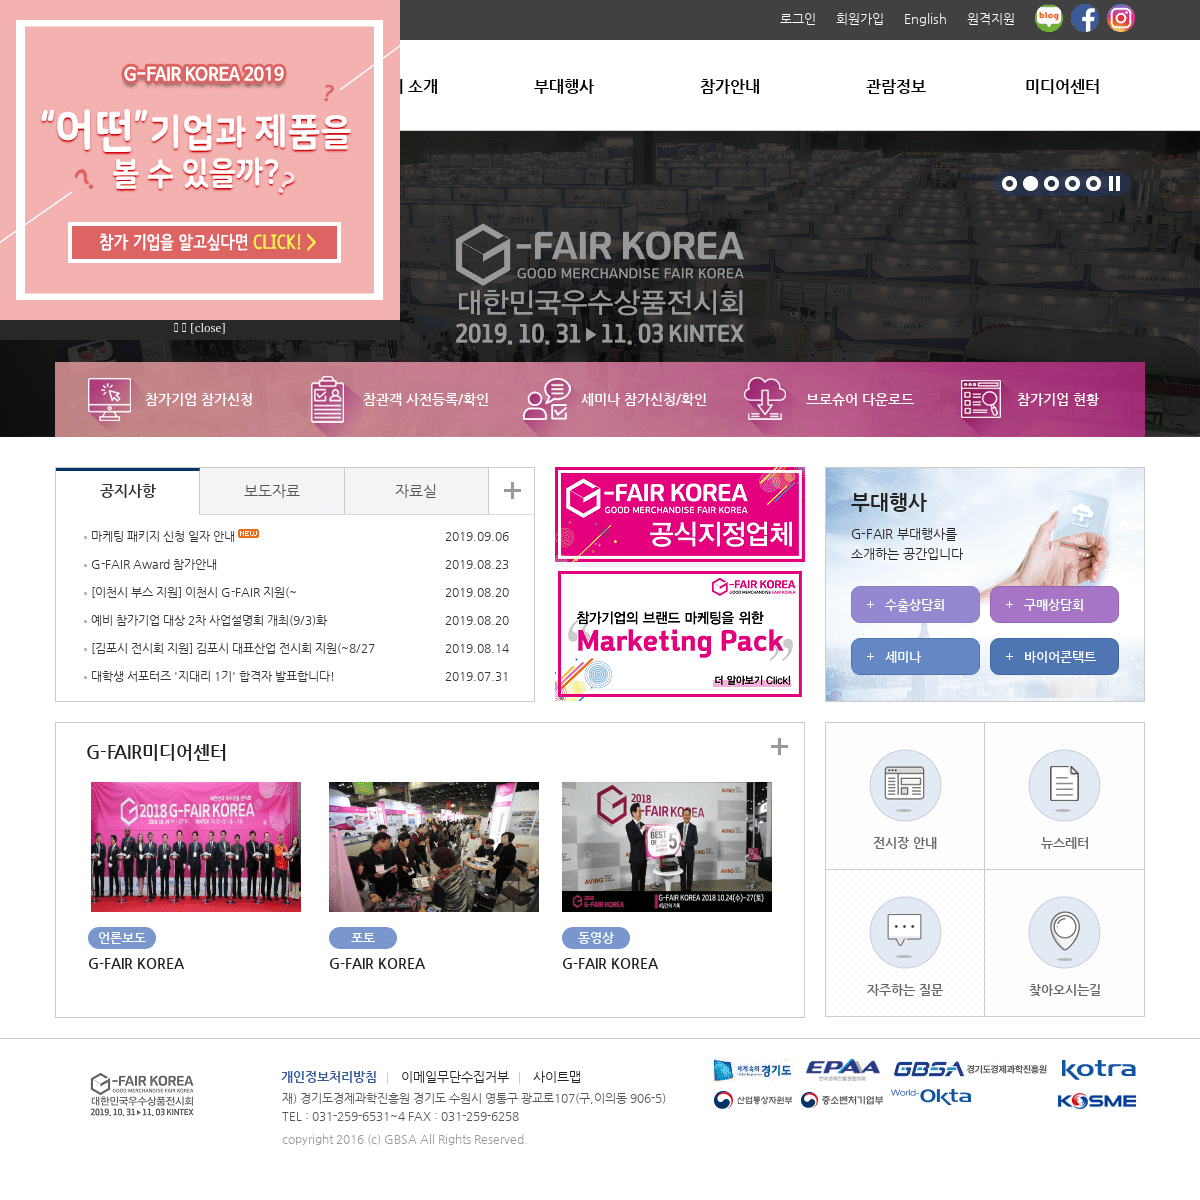 대한민국 우수상품전시회 지페어 코리아 ▦ G-FAIR KOREA